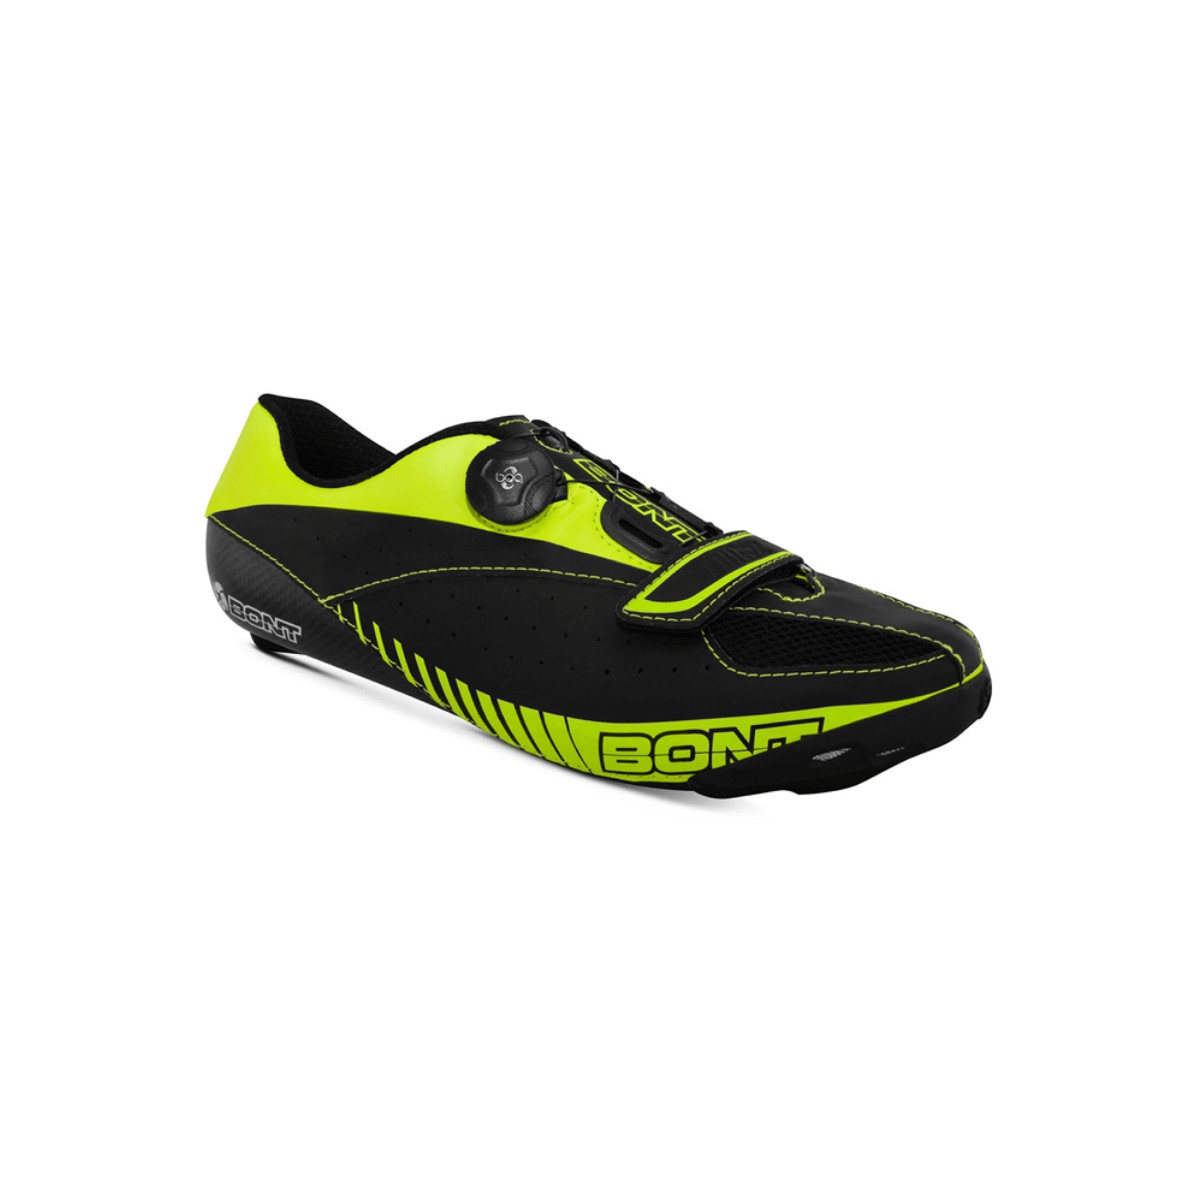 Bont Blitz Road Cycling Shoe Yellow Black, Size 42 - EUR